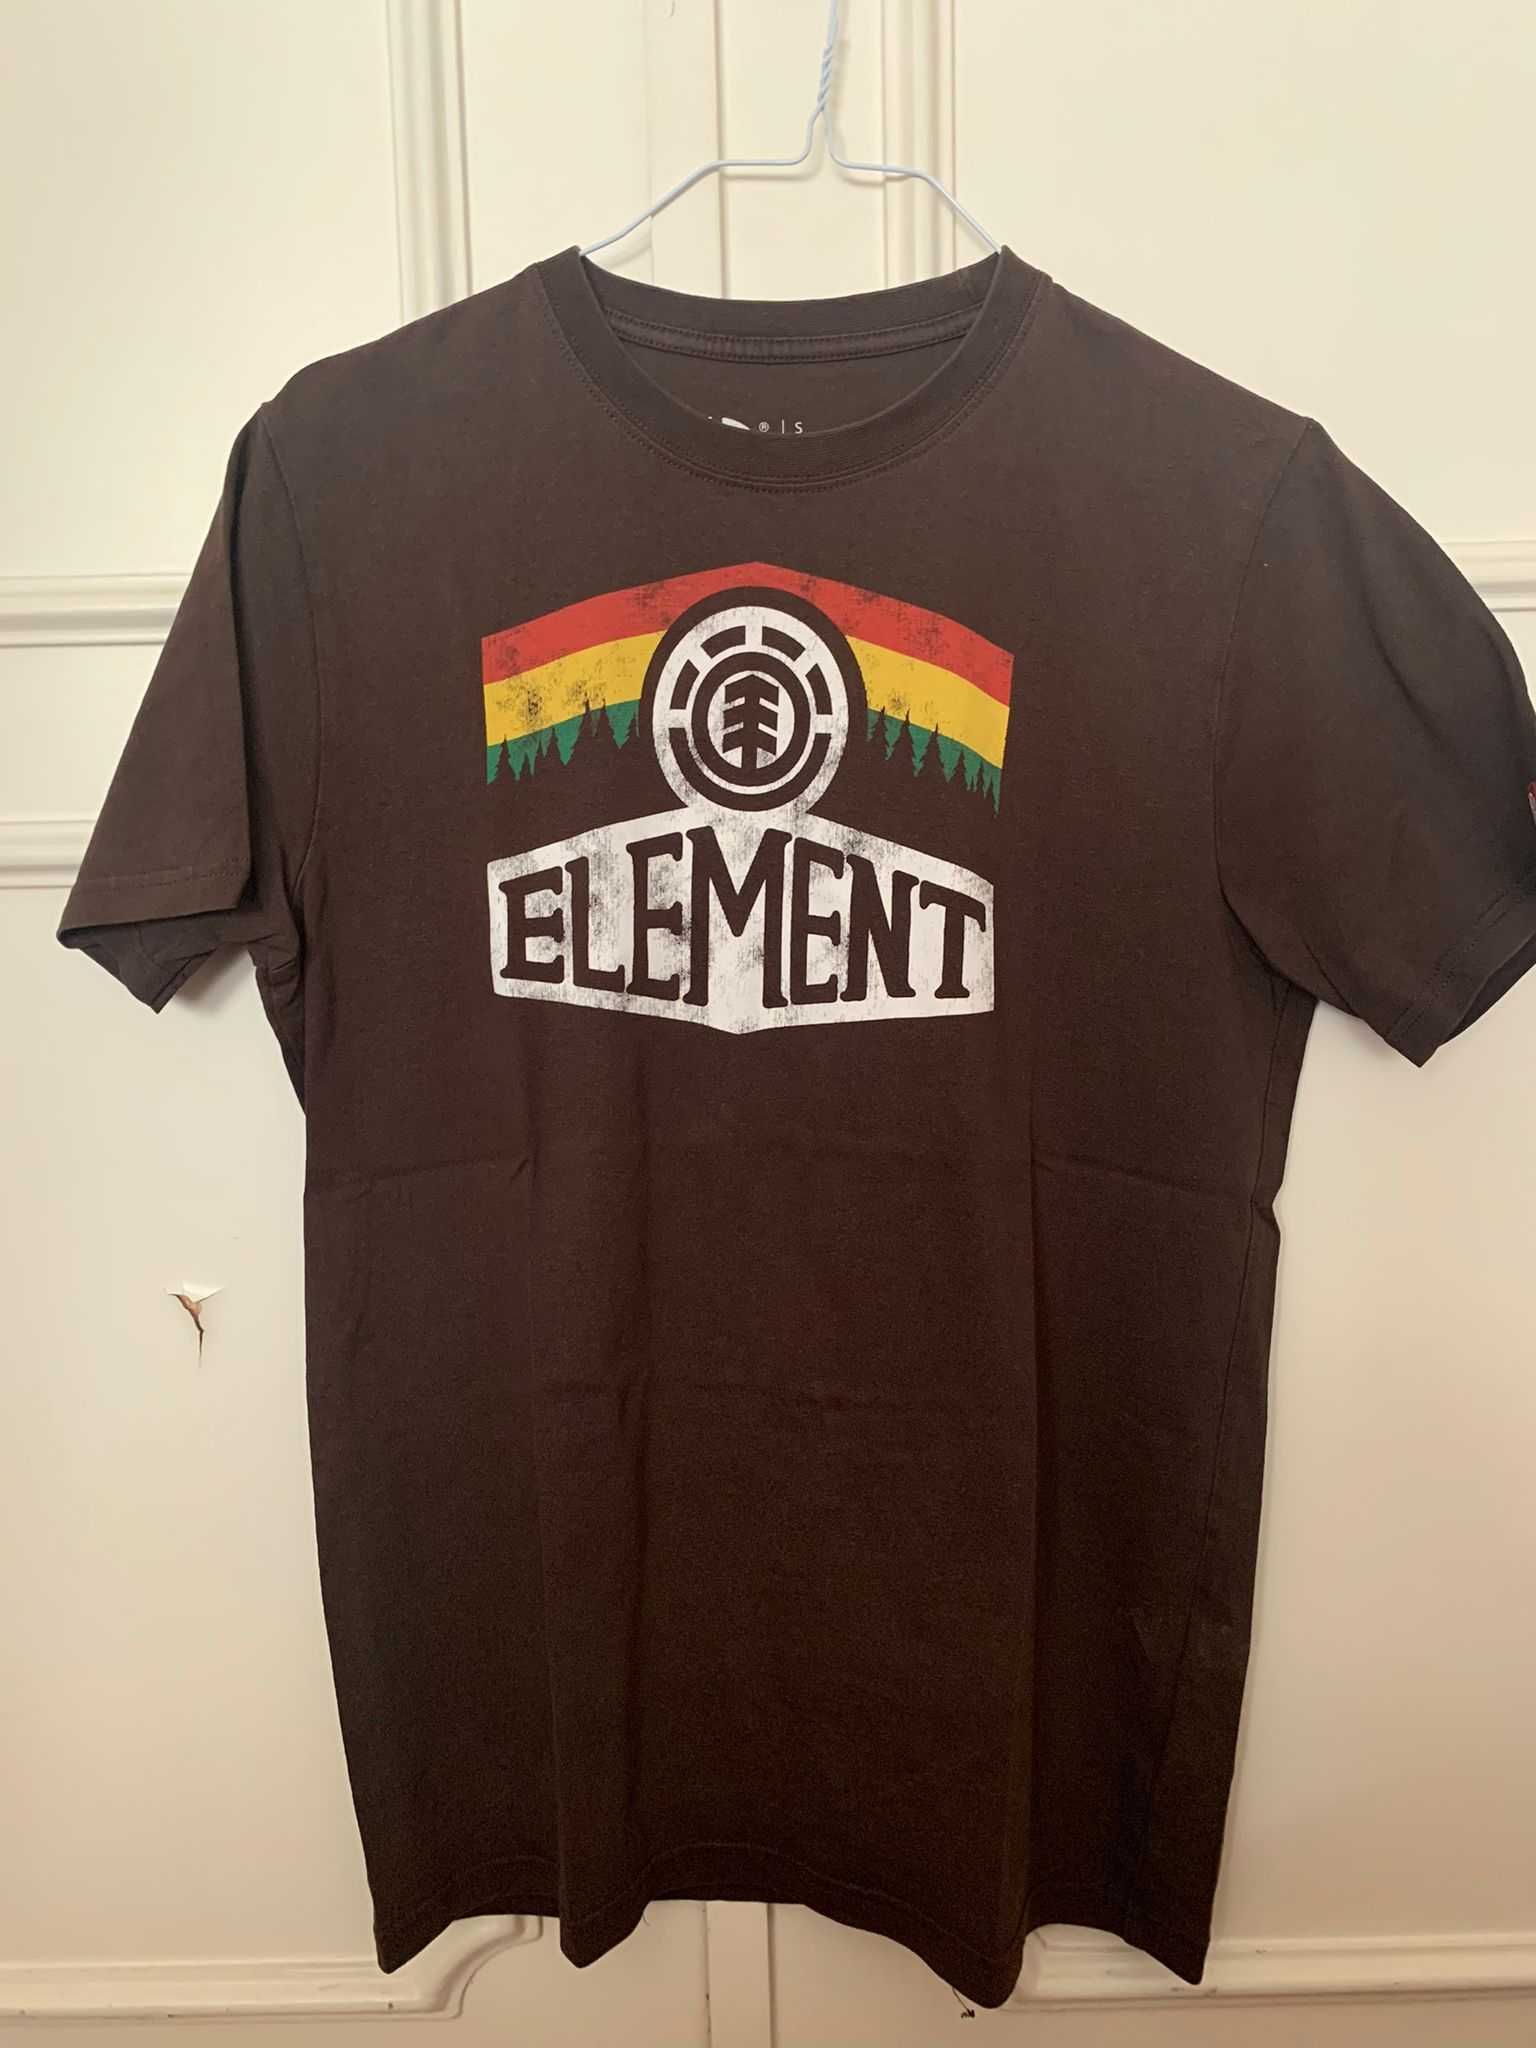 3x T-shirts Billabong + Quiksilver + Element - S